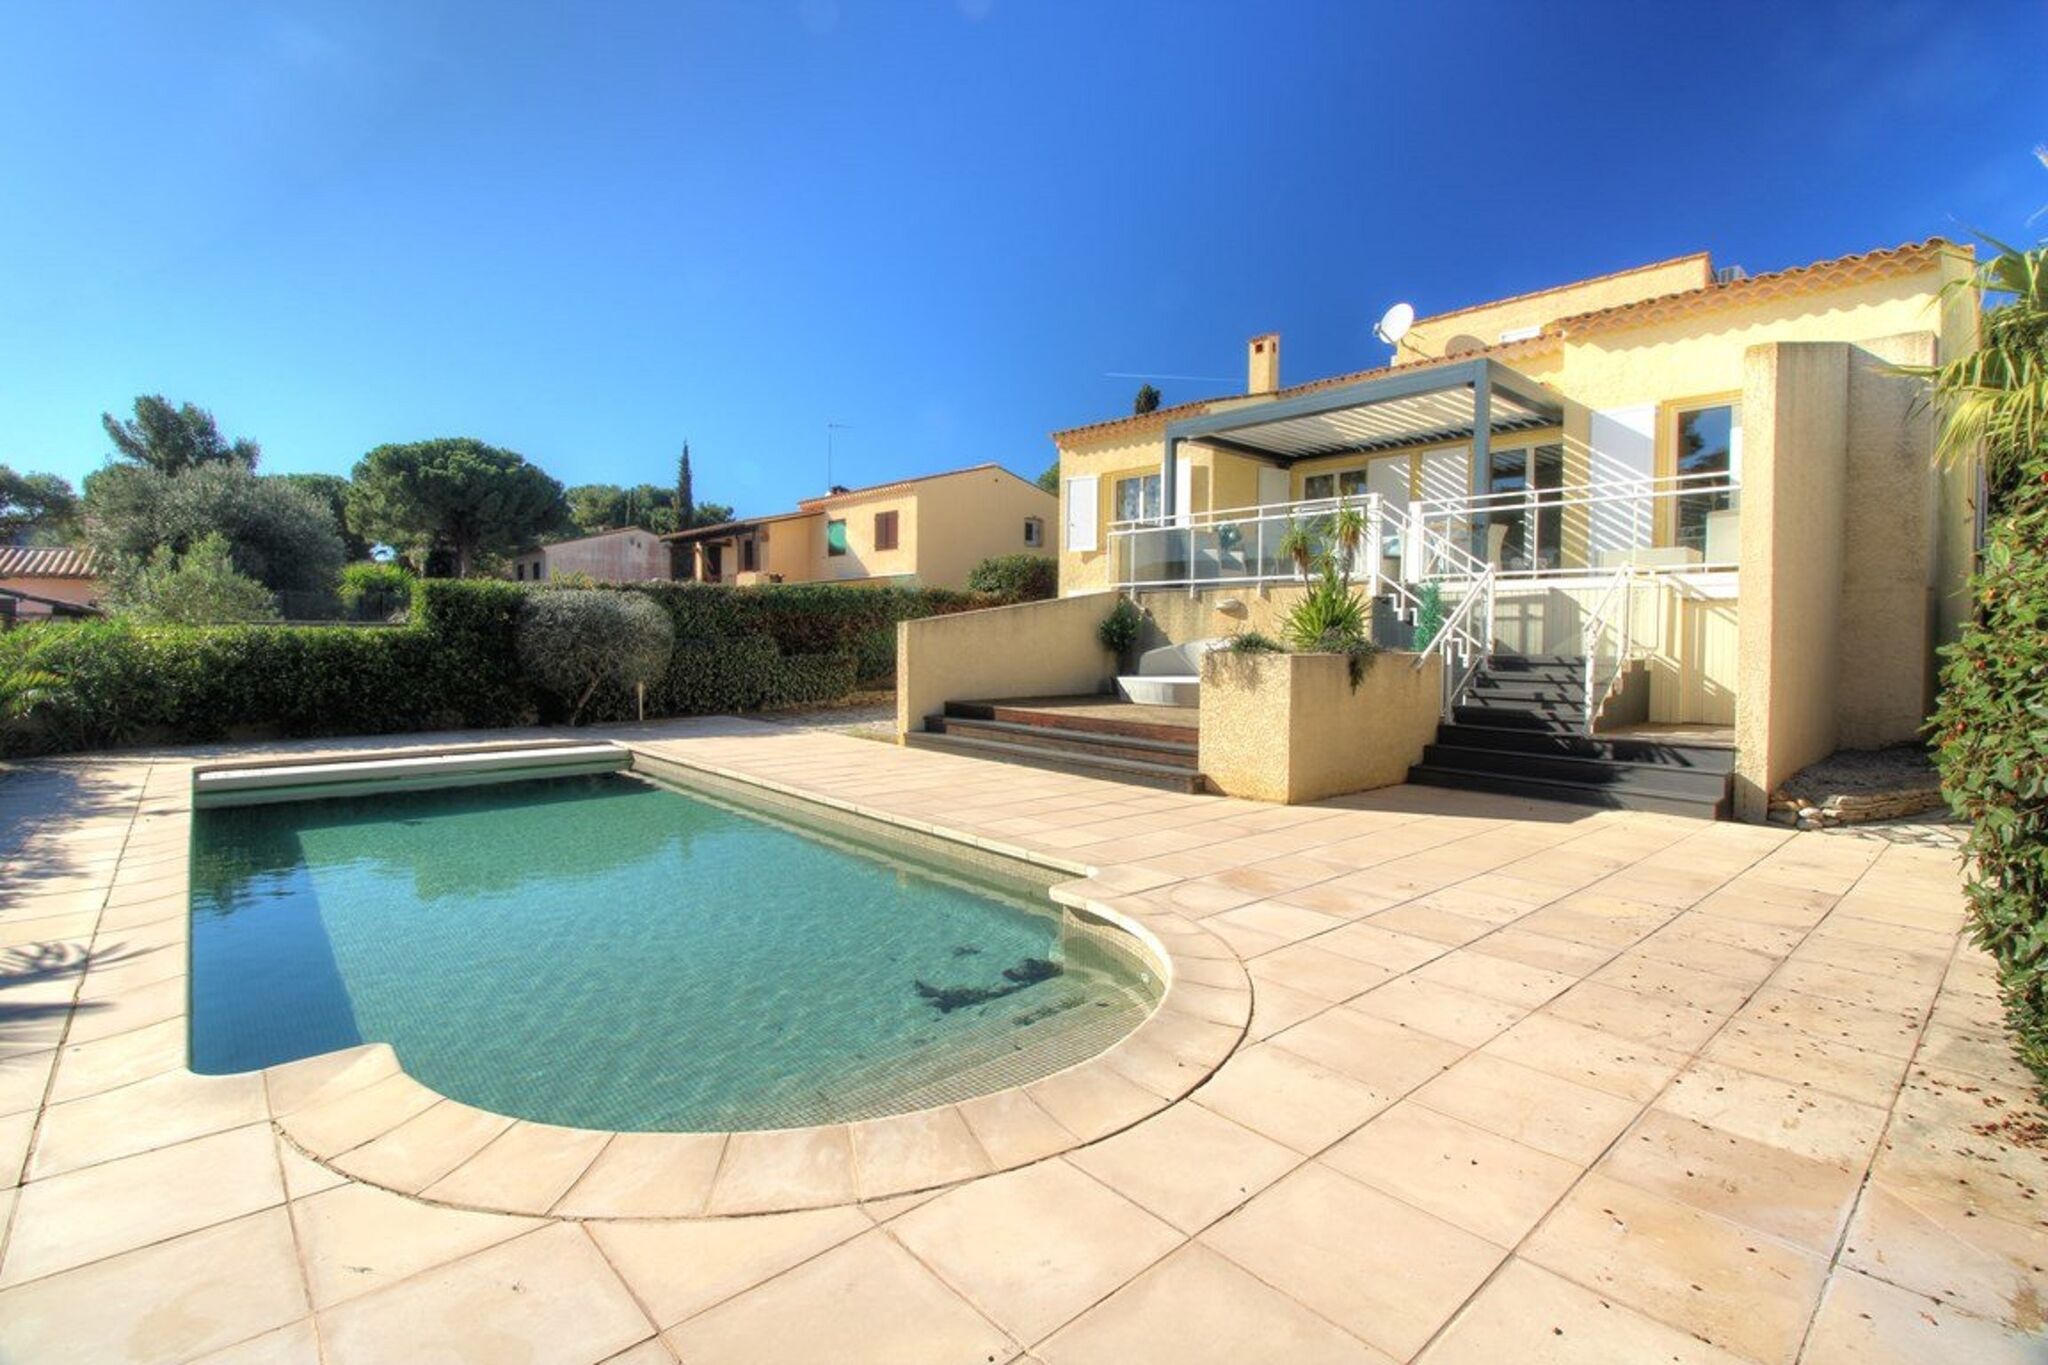 Prachtig vakantiehuis in Agde met privézwembad